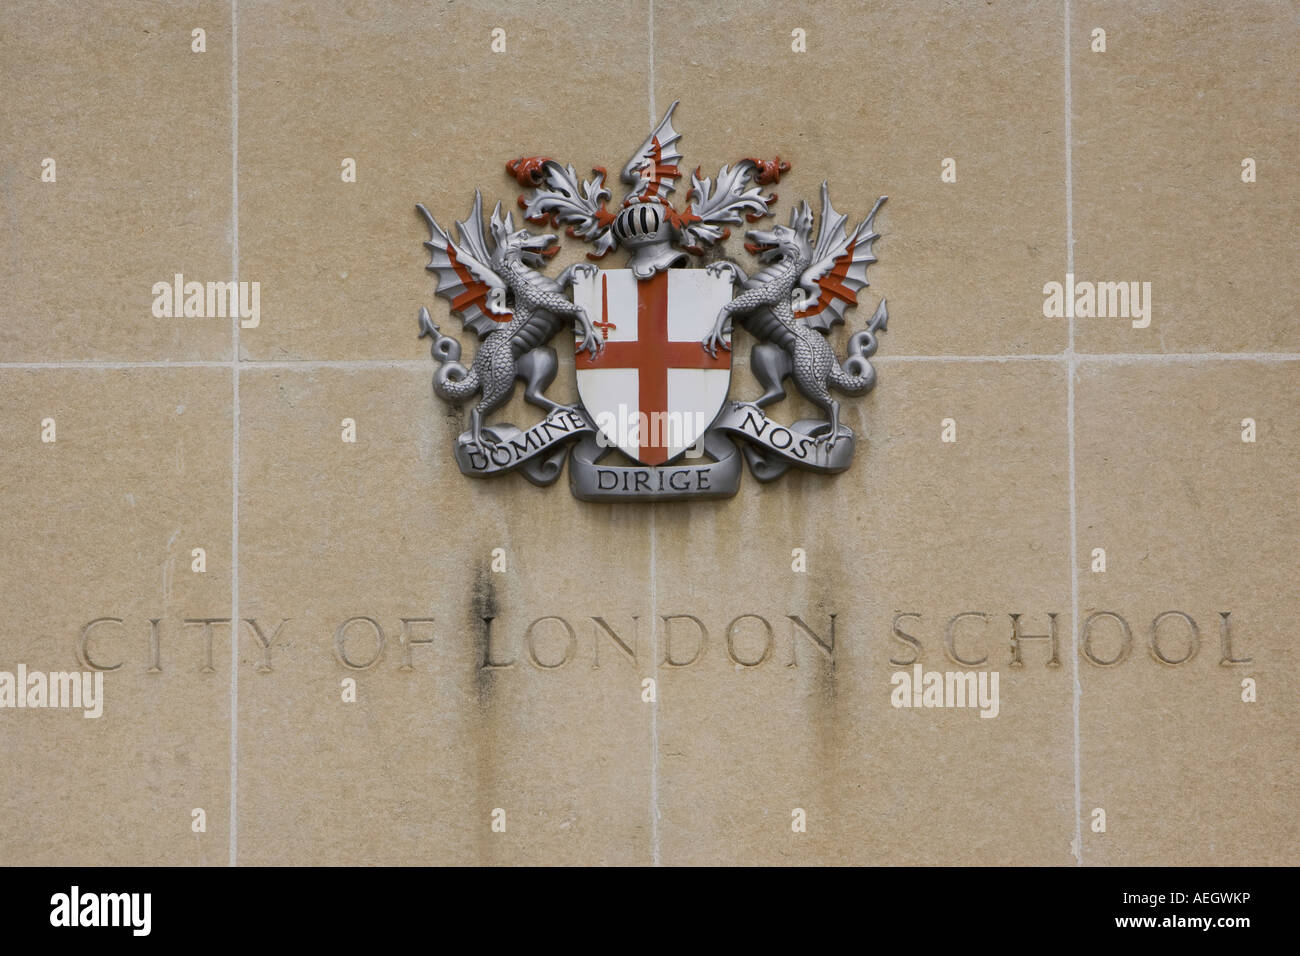 Wappen der Stadt London über ein Zeichen für die City of London School Stockfoto